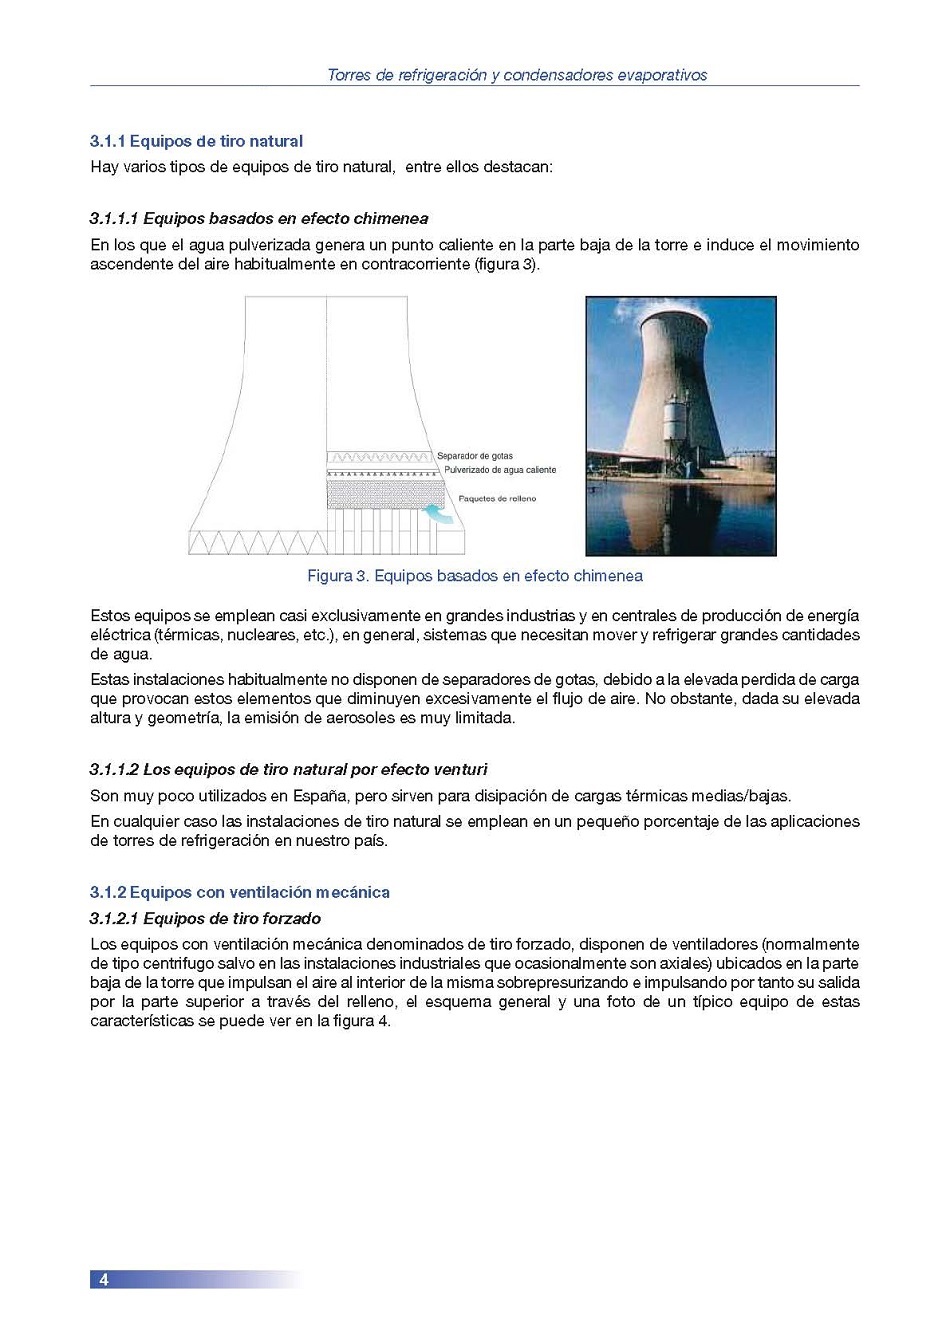 Torres de Refrigeracin y Condensadores Evaporativos. Pgina 04